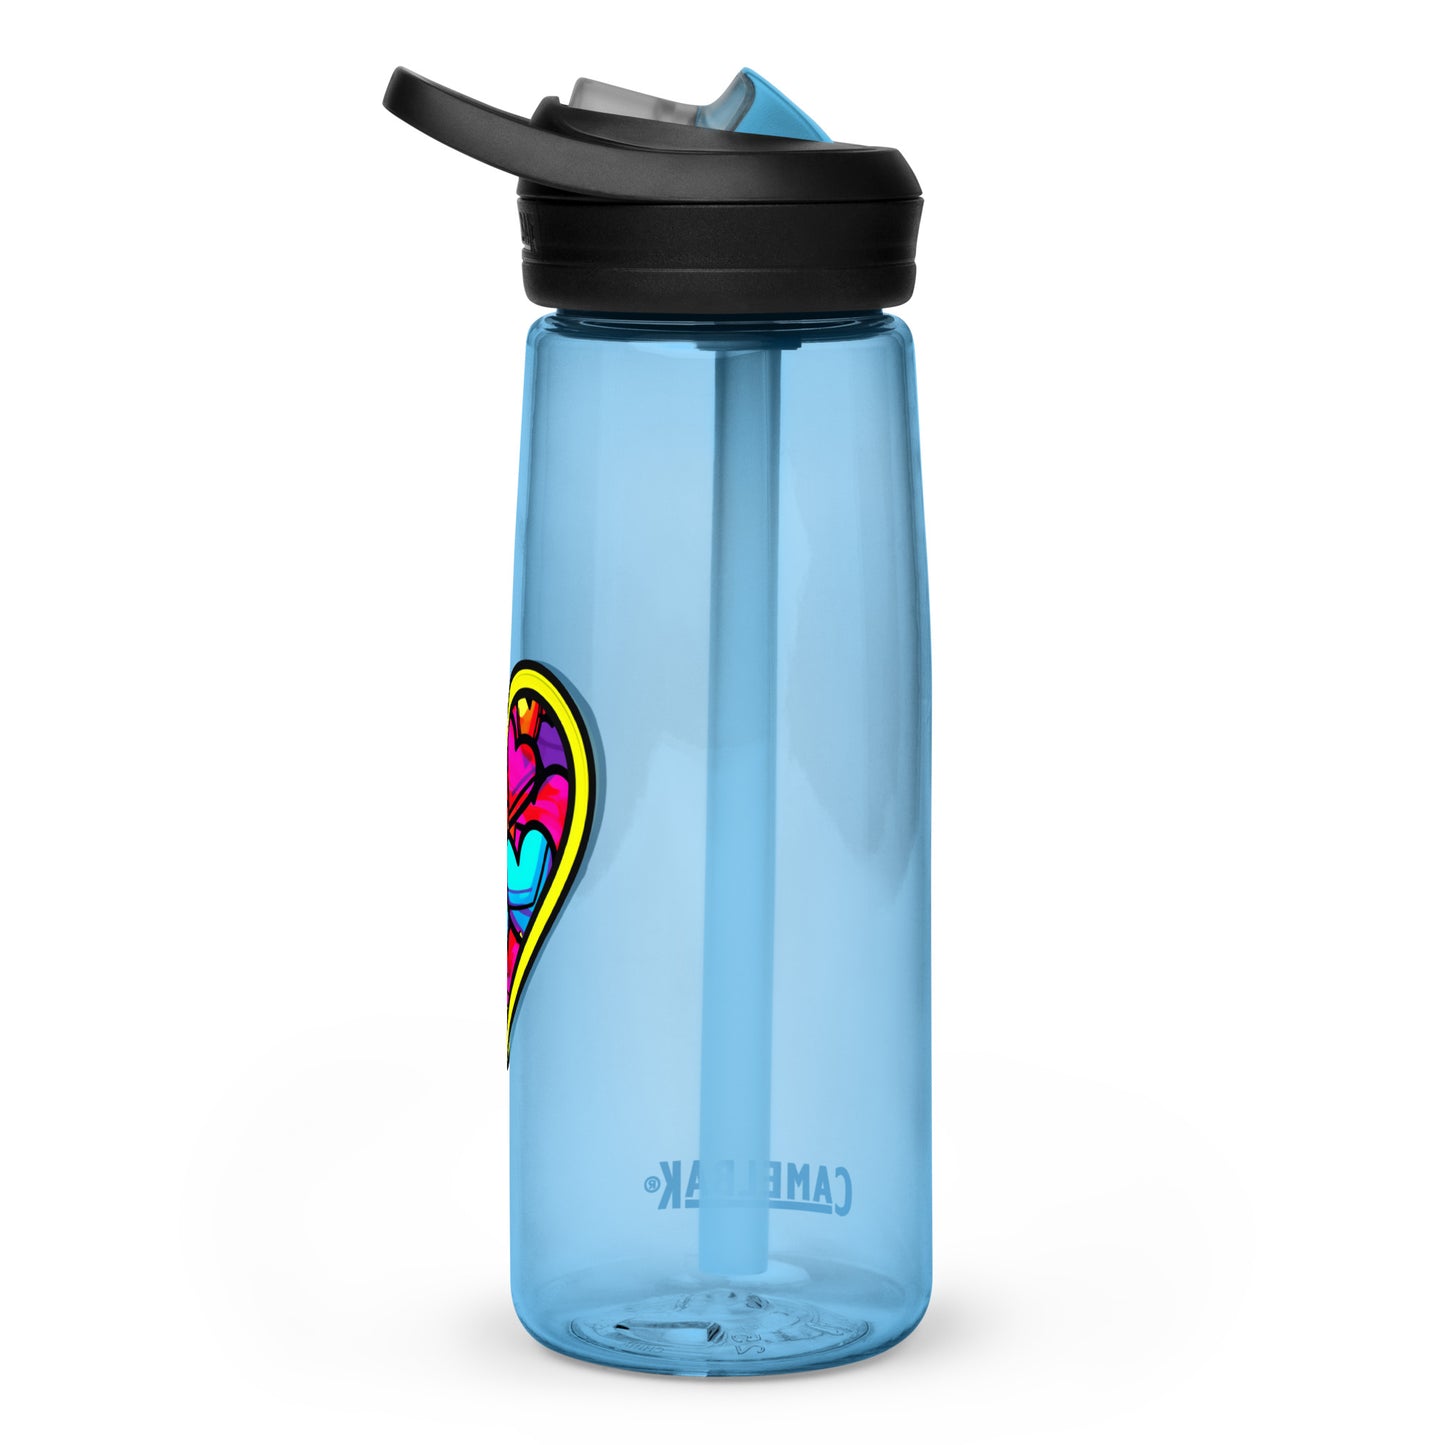 Heart 25oz Sports water bottle